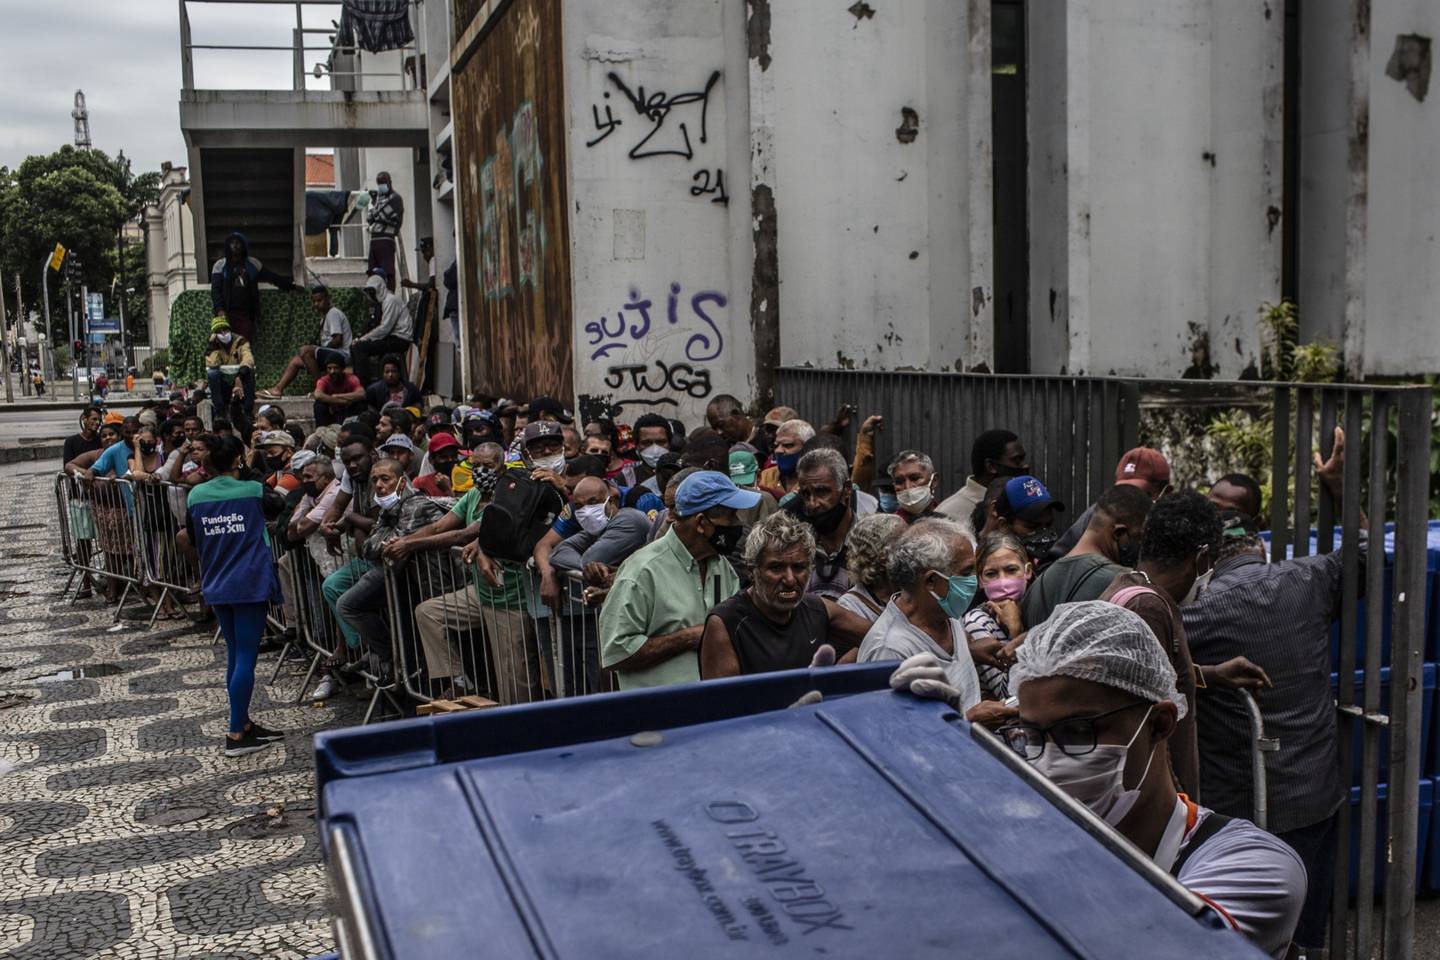 Personas hacen fila para recibir alimentos frente a la Biblioteca Parque Estadual en el centro de Río de Janeiro, Brasil, el jueves 29 de abril de 2021.dfd